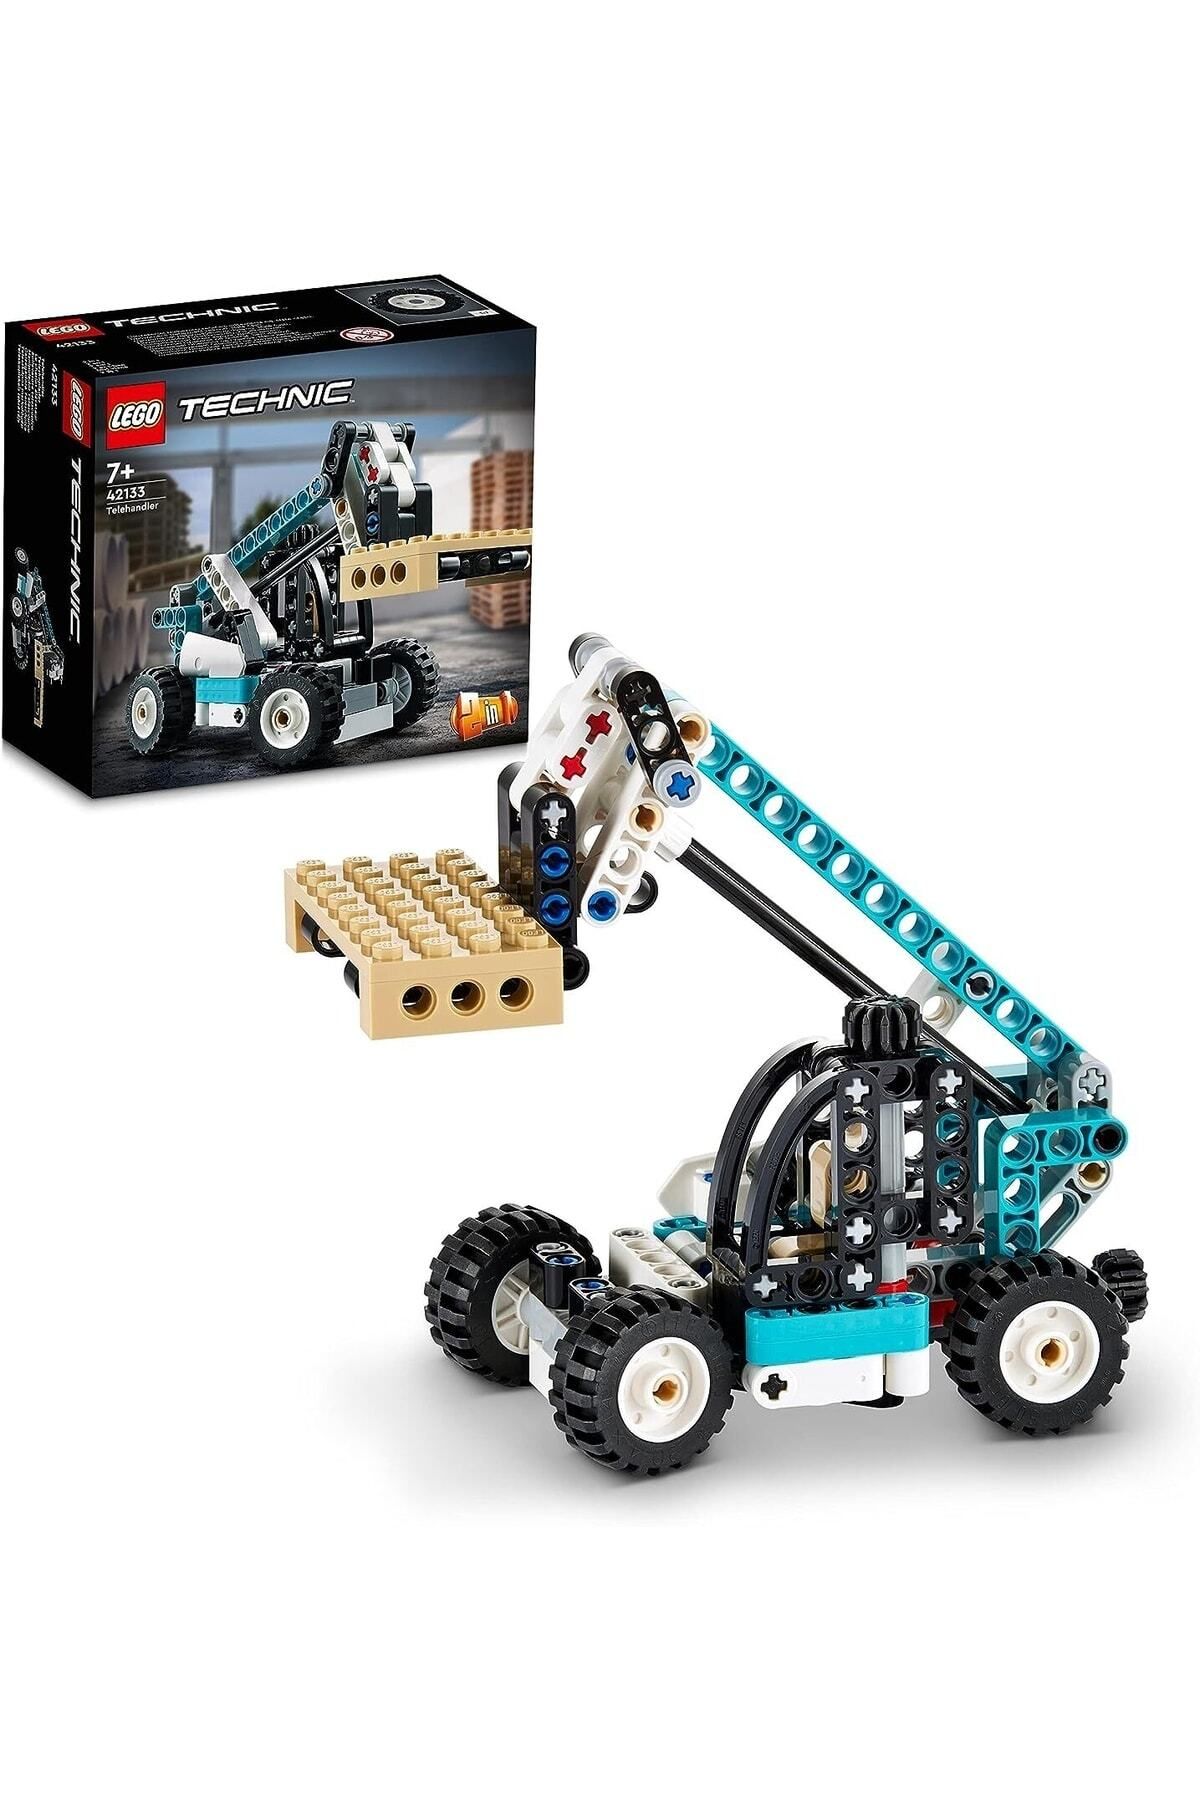 LEGO ® Technic Teleskopik Yükleyici 42133 – Araç Sevenler İçin Koleksiyonluk Yapım Seti (143 Parça)